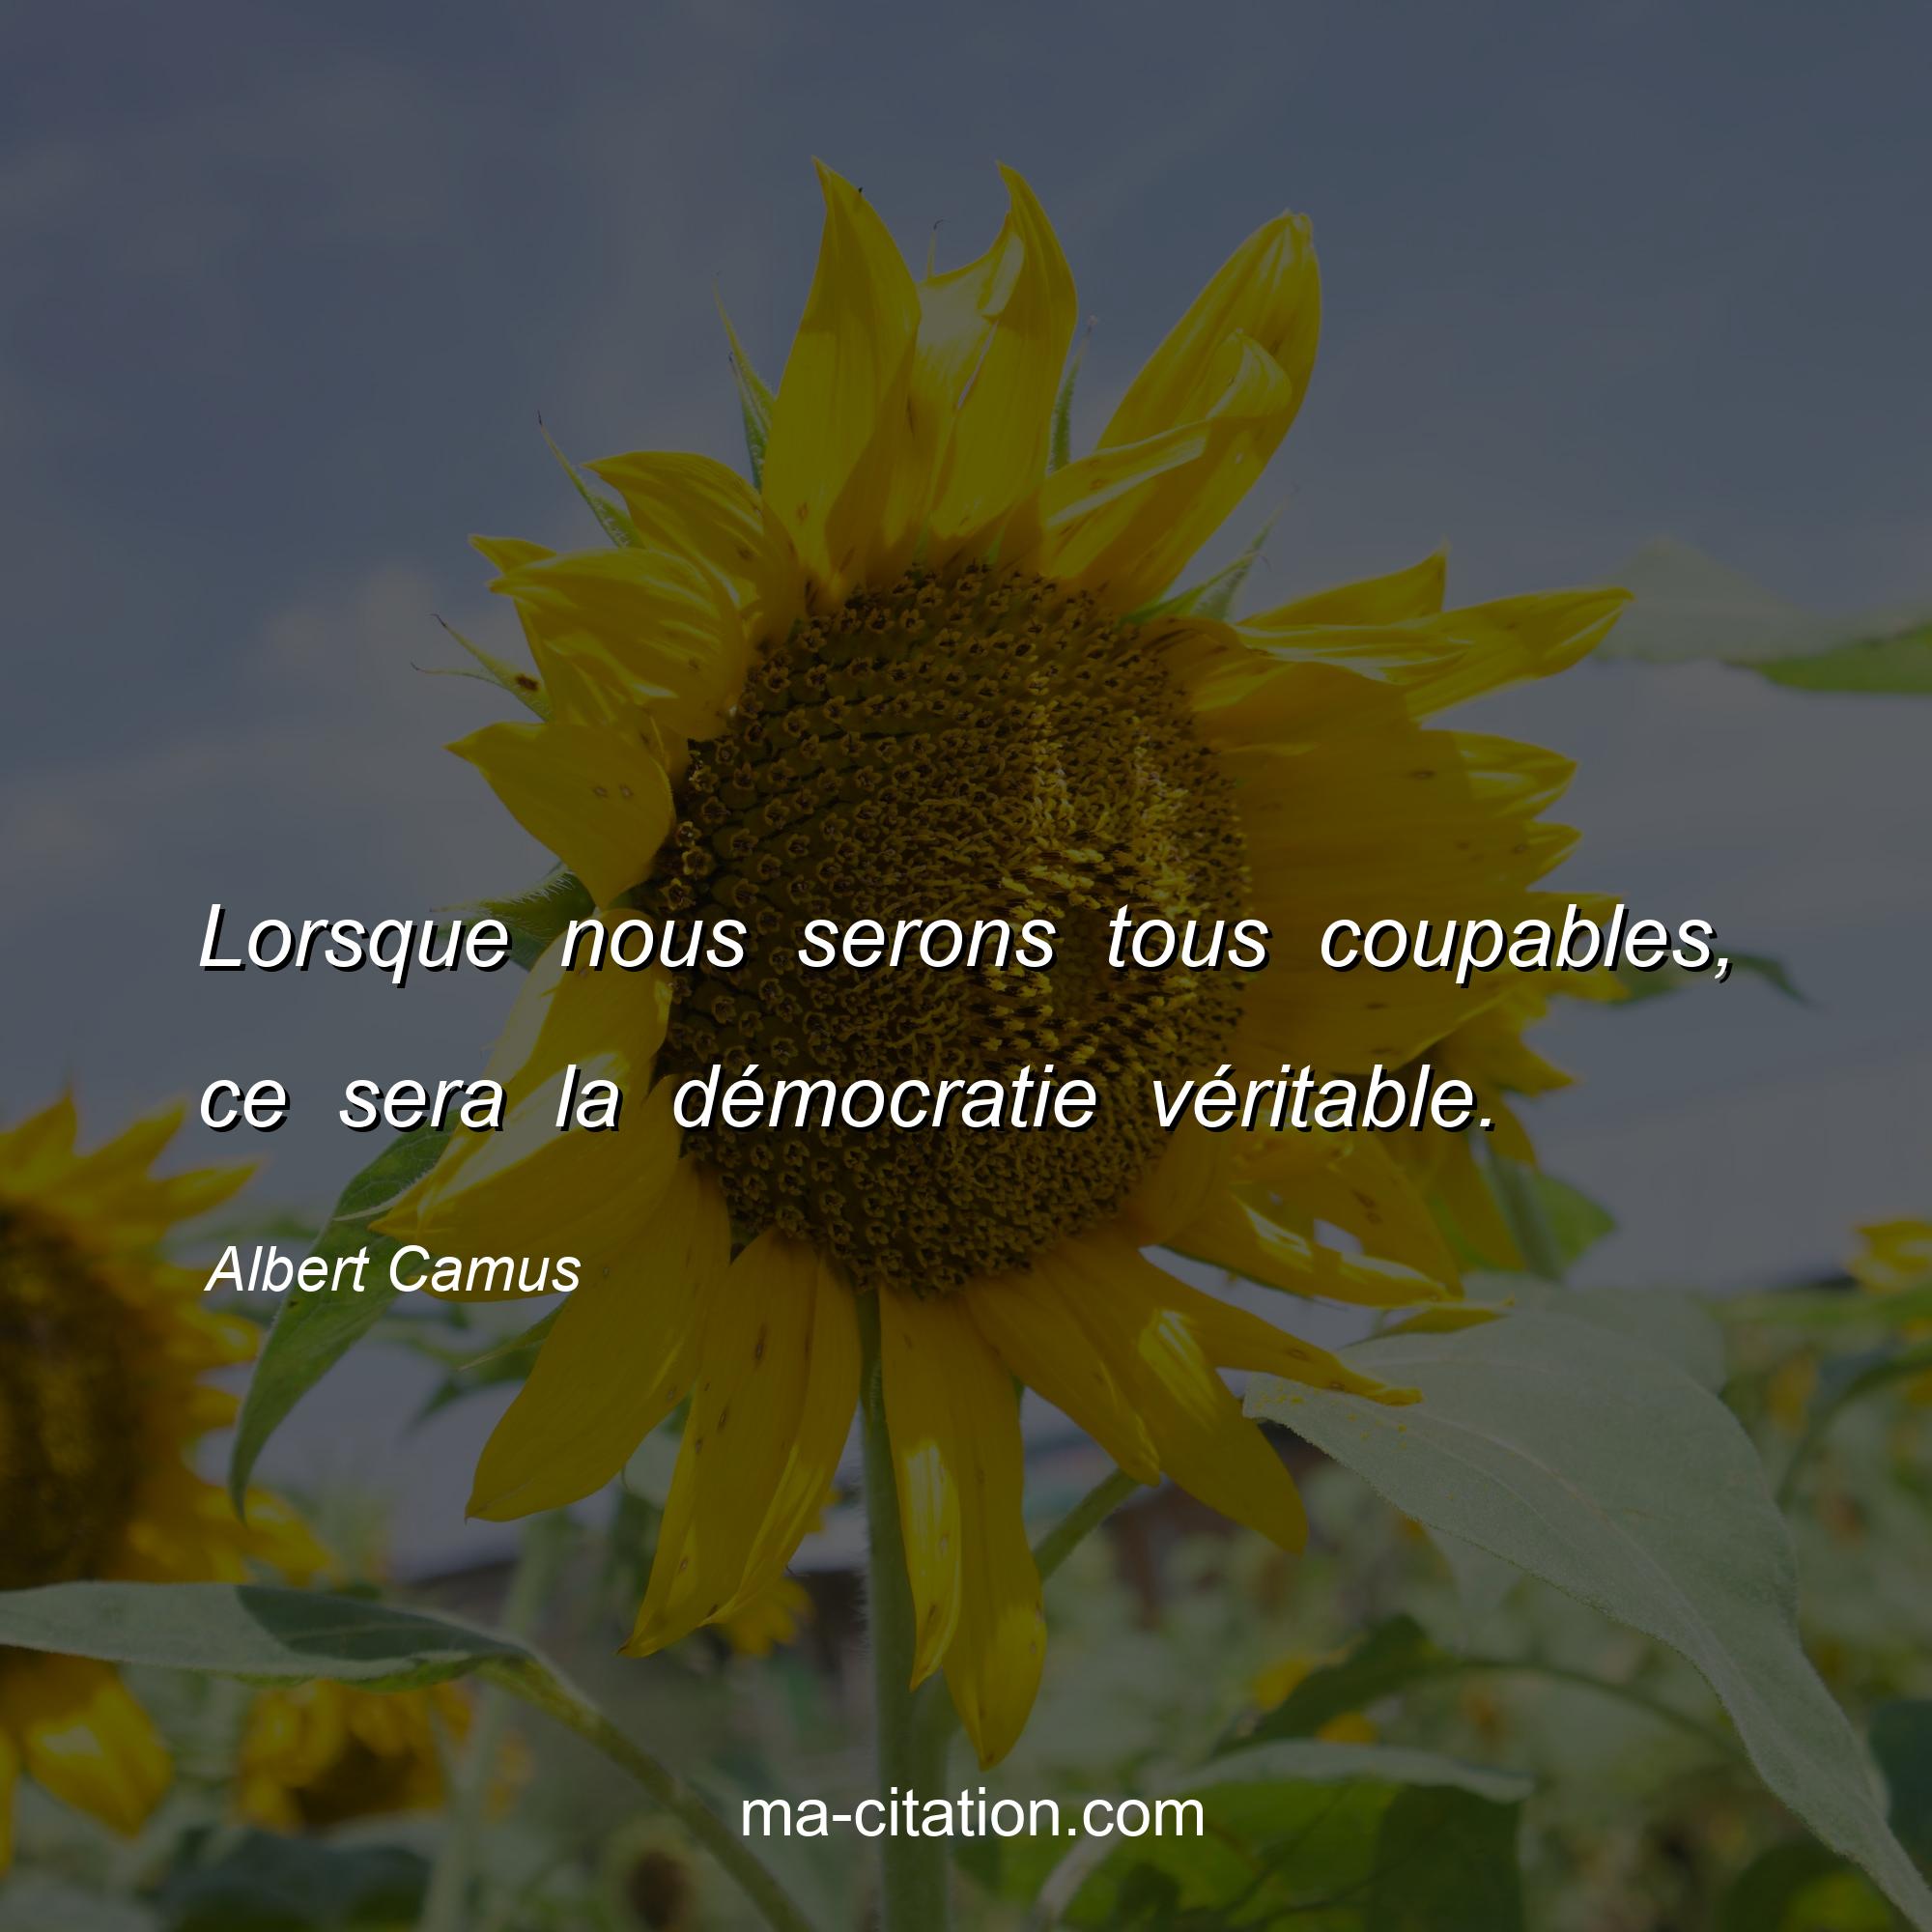 Albert Camus : Lorsque nous serons tous coupables, ce sera la démocratie véritable.